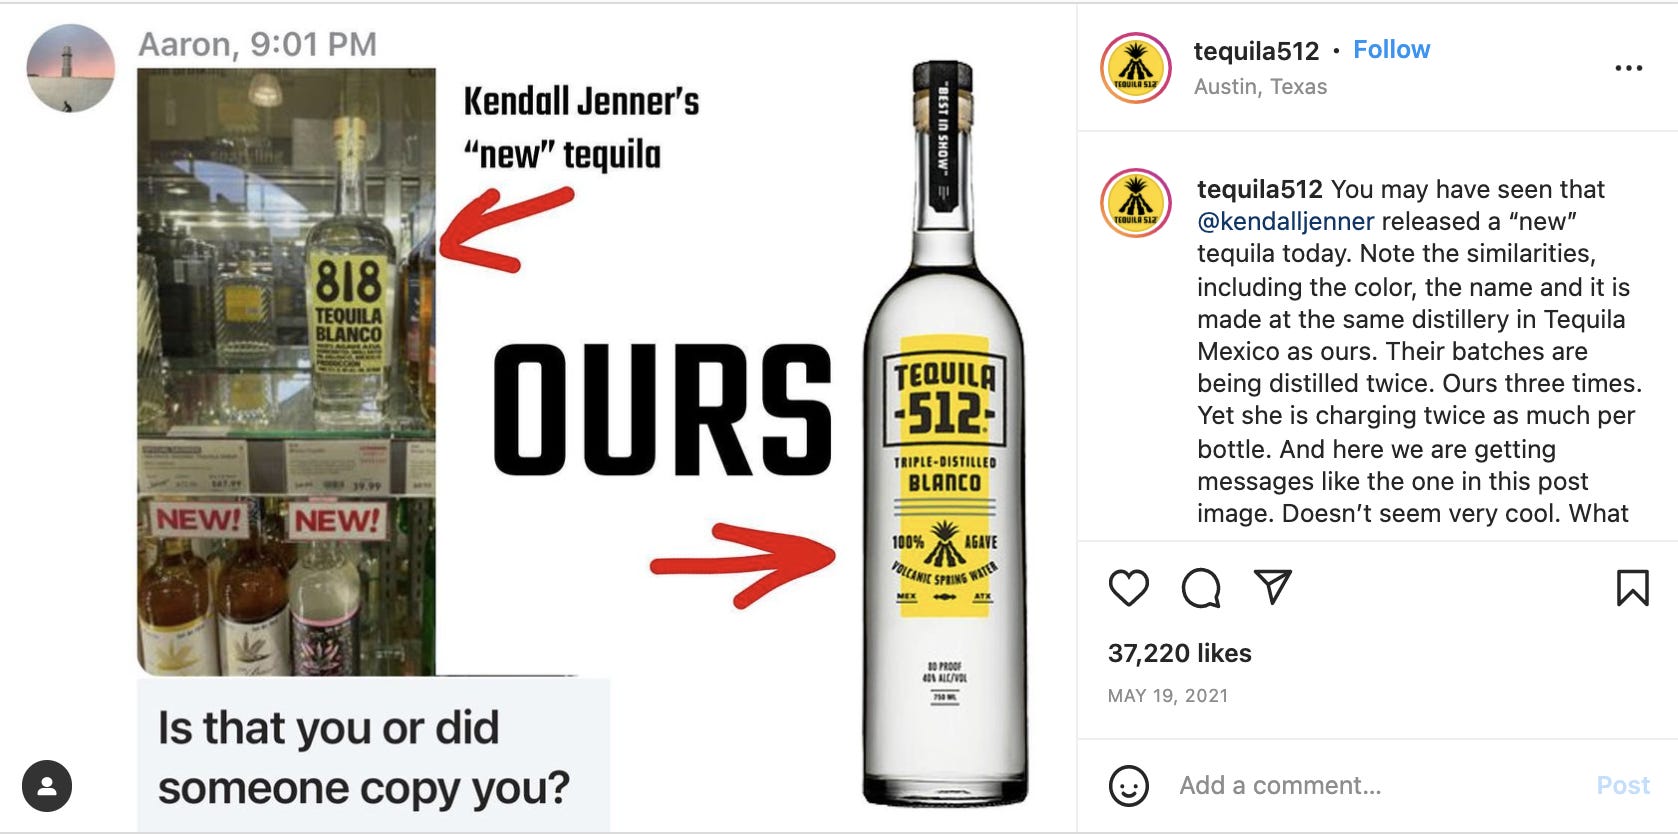 Ein Screenshot zeigt einen von Tequila 512 geteilten Instagram-Post, der offensichtliche Ähnlichkeiten zwischen seiner Flasche und der Marke 818 Tequila von Kendall Jenner zeigt.